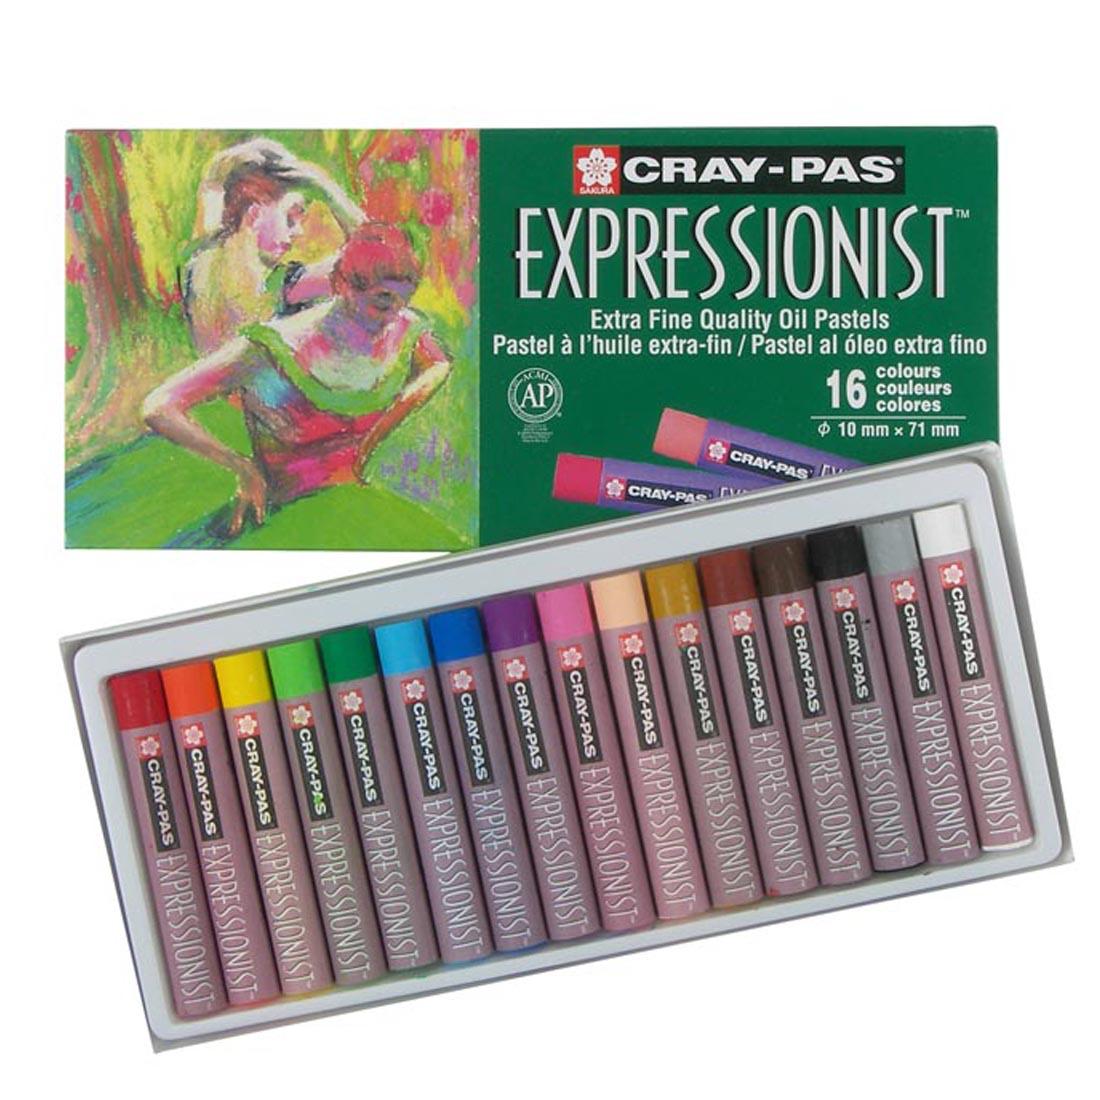 Cray-Pas Expressionist Oil Pastels 16-Color Set